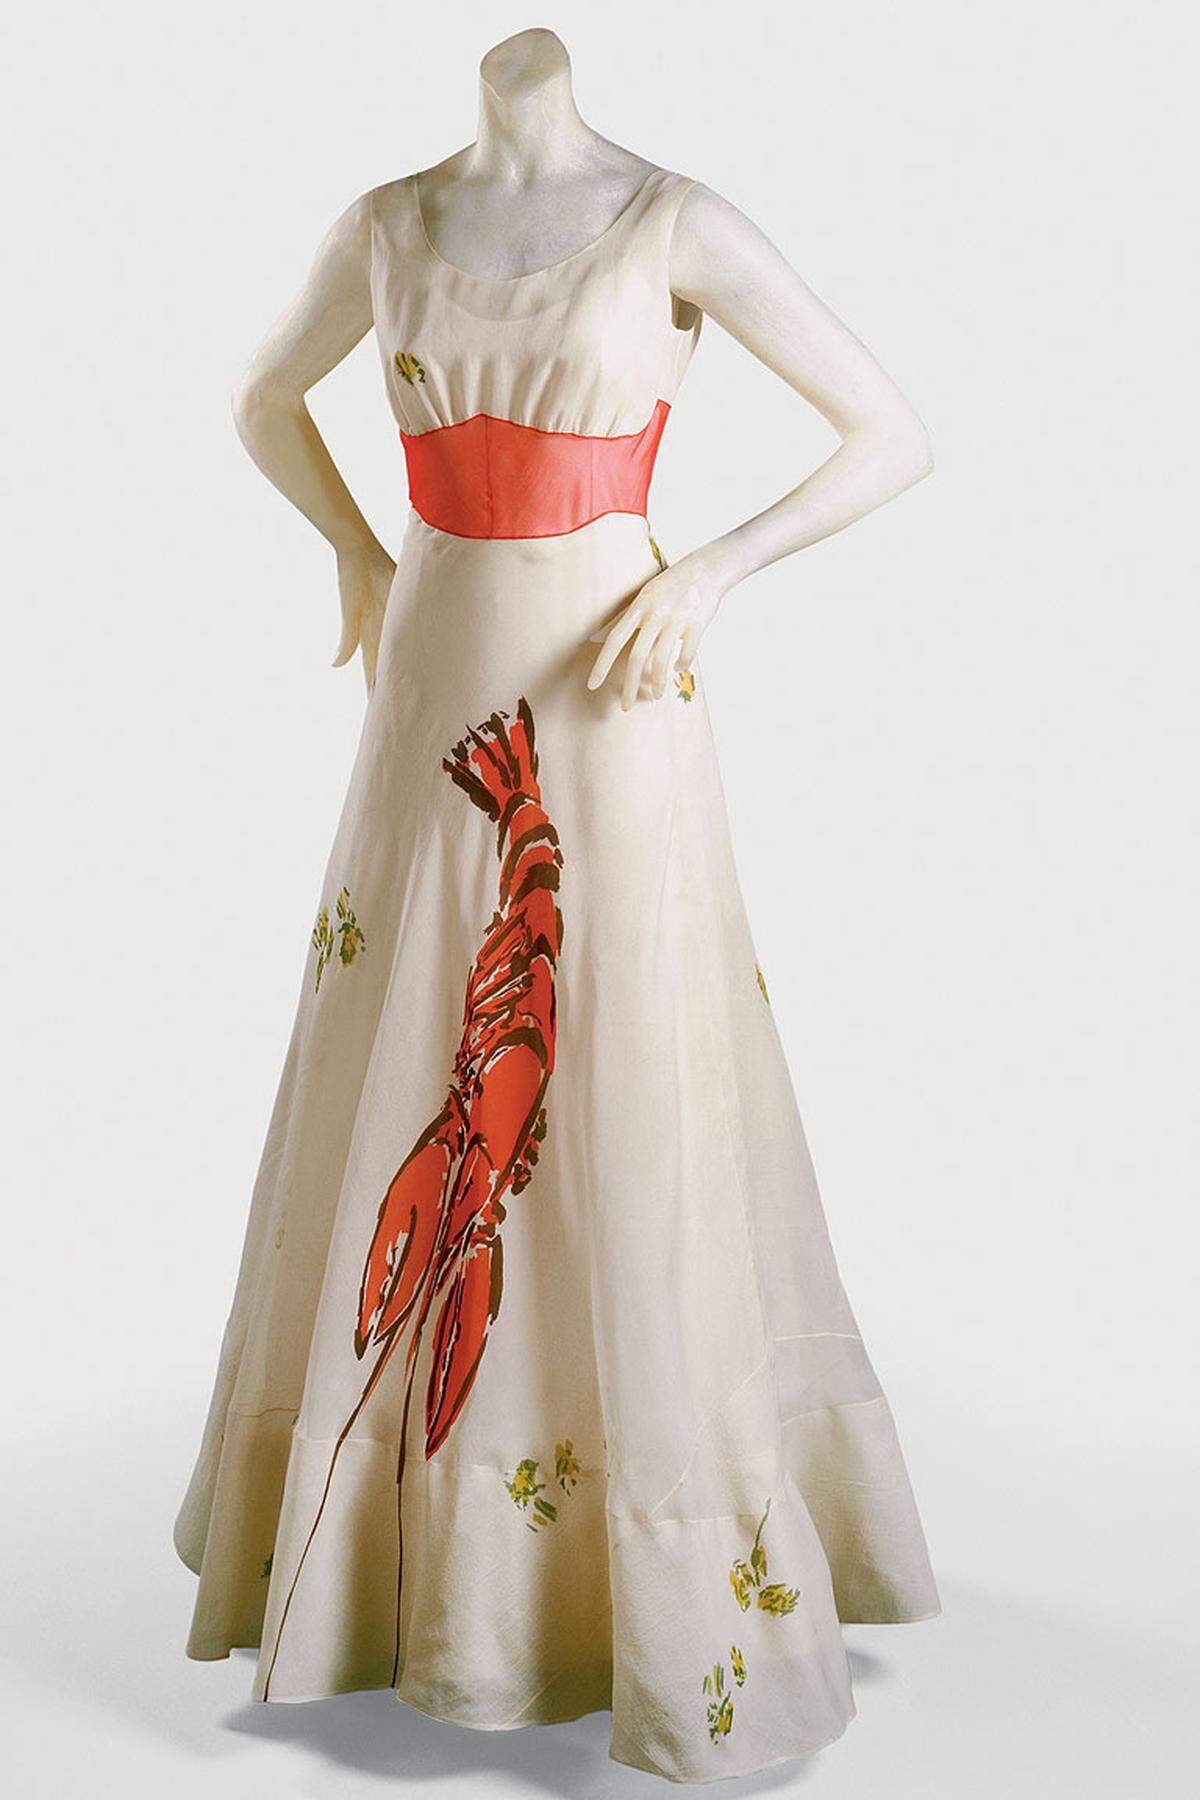 Da sind die Surrealisten, die mit Modeschöpfern eng zusammenarbeiteten - ausgestellt ist das "Hummerkleid" von Elsa Schiaparelli, das sich direkt auf Dalis "Hummertelefon" bezieht.Elsa Schiaparelli &amp; Salvador Dalí Woman's Dinner Dress